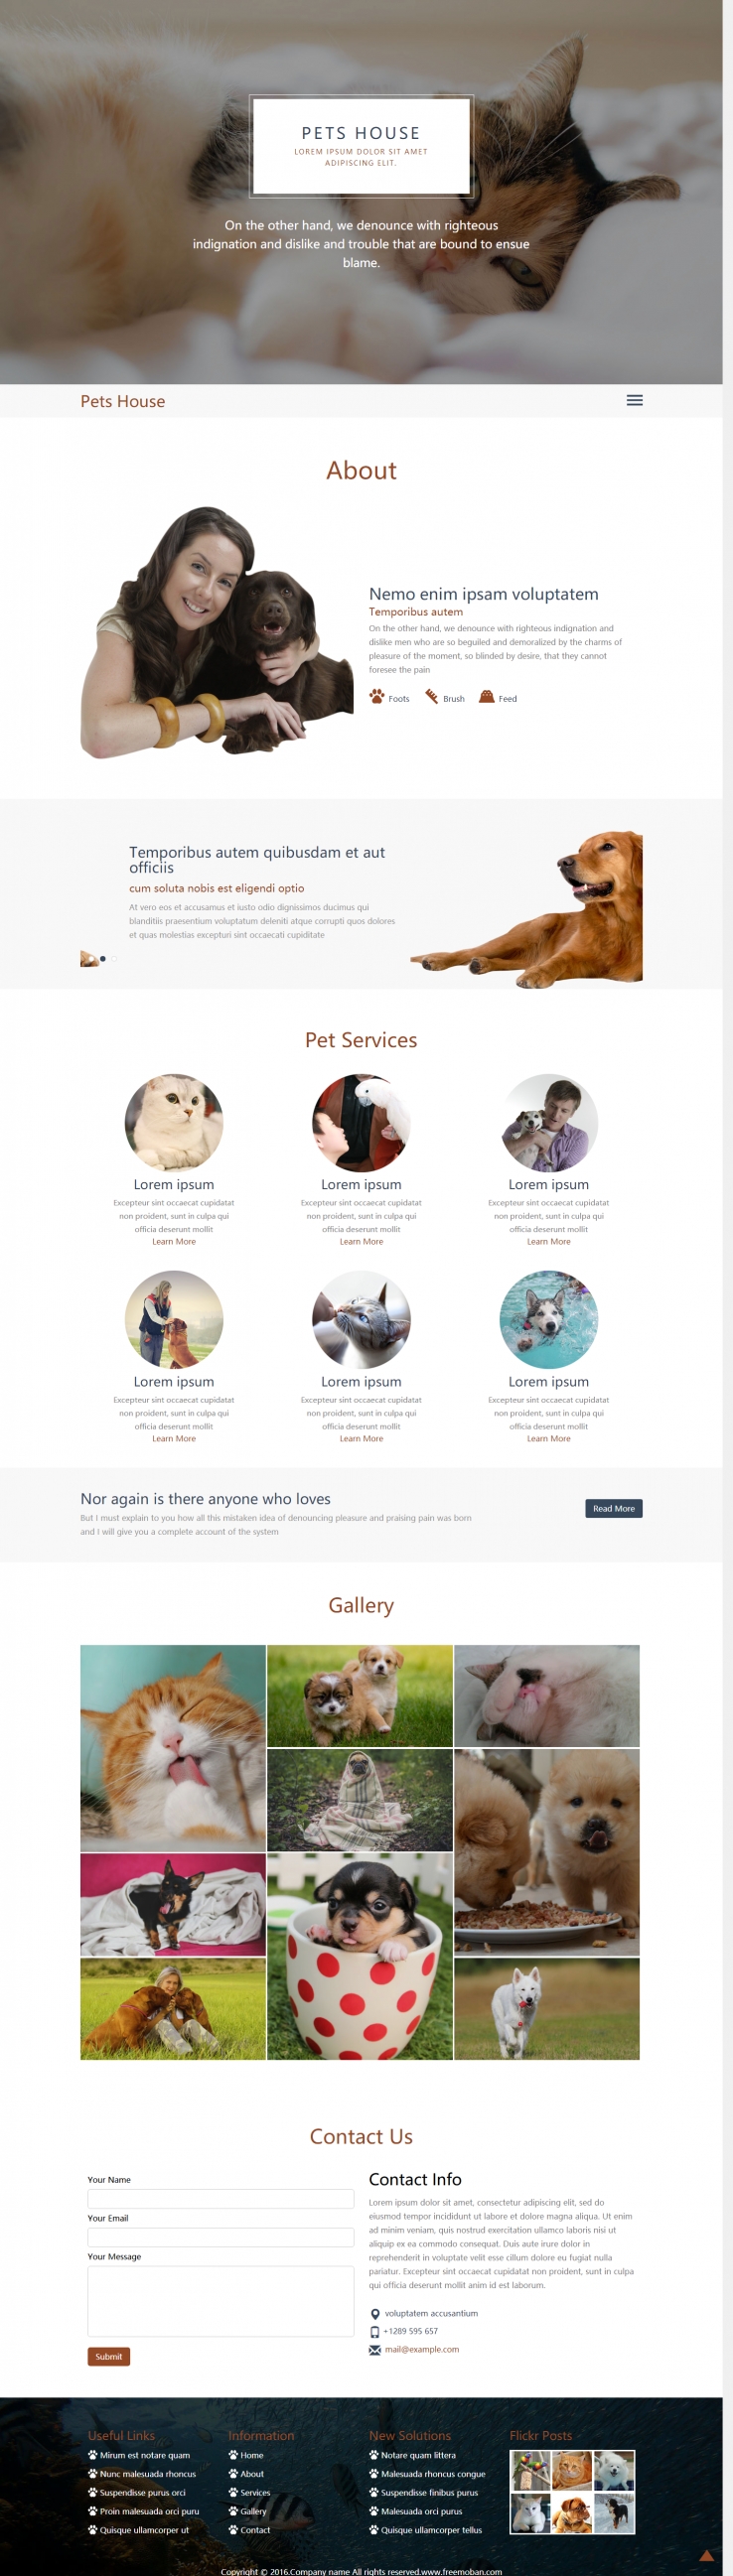 棕色大气风格的宠物之家网站模板下载